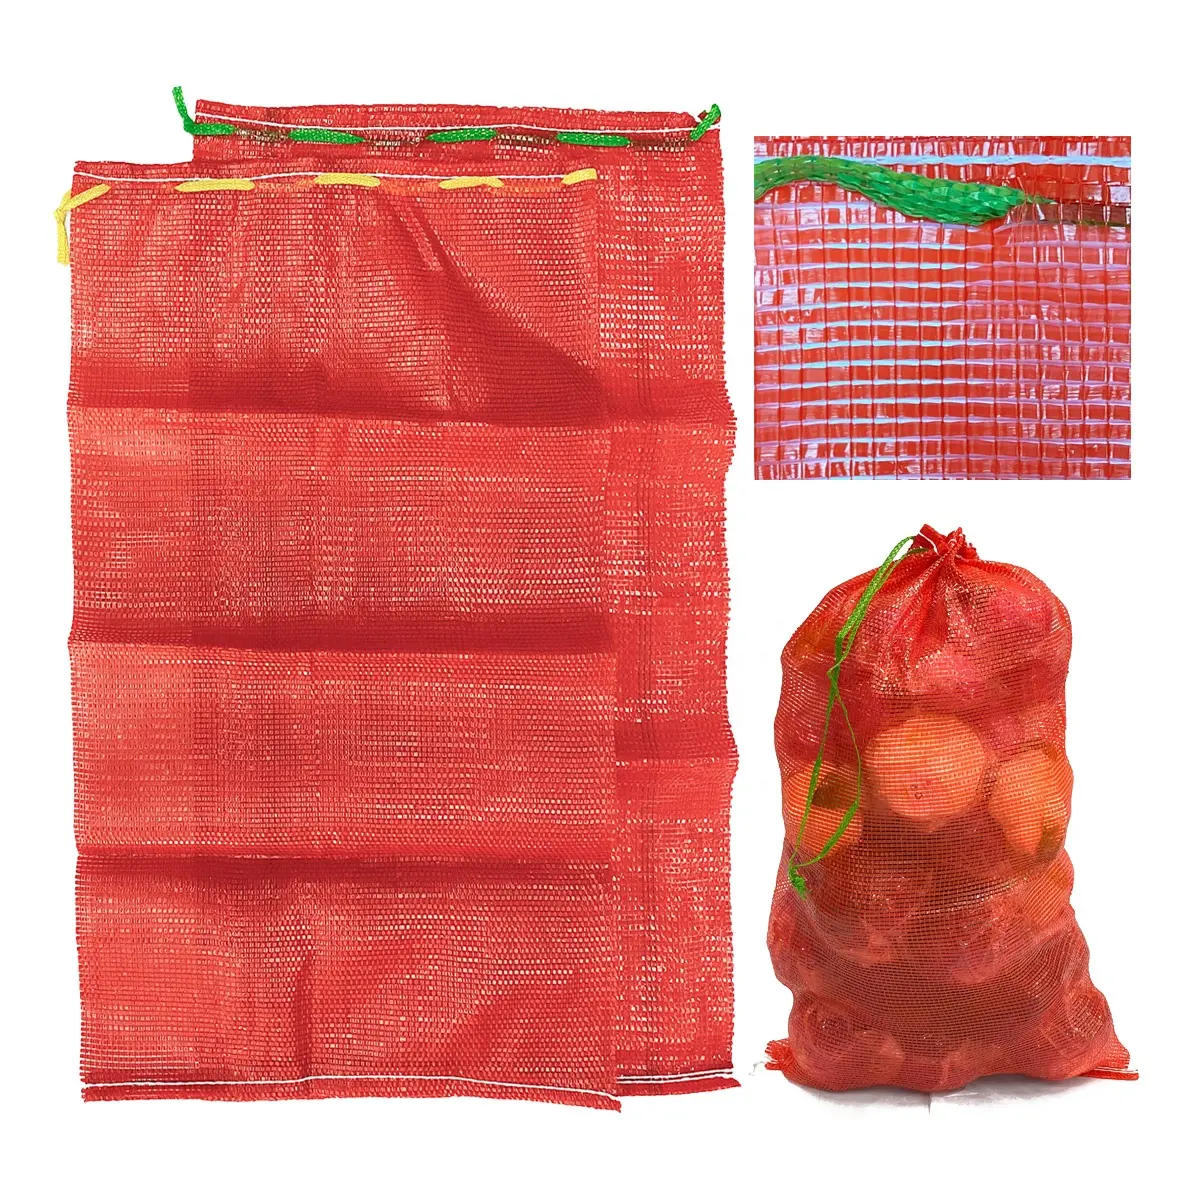 卸売カスタムリサイクルプラスチックネットサックオニオンポテト野菜包装PP管状レノメッシュバッグ